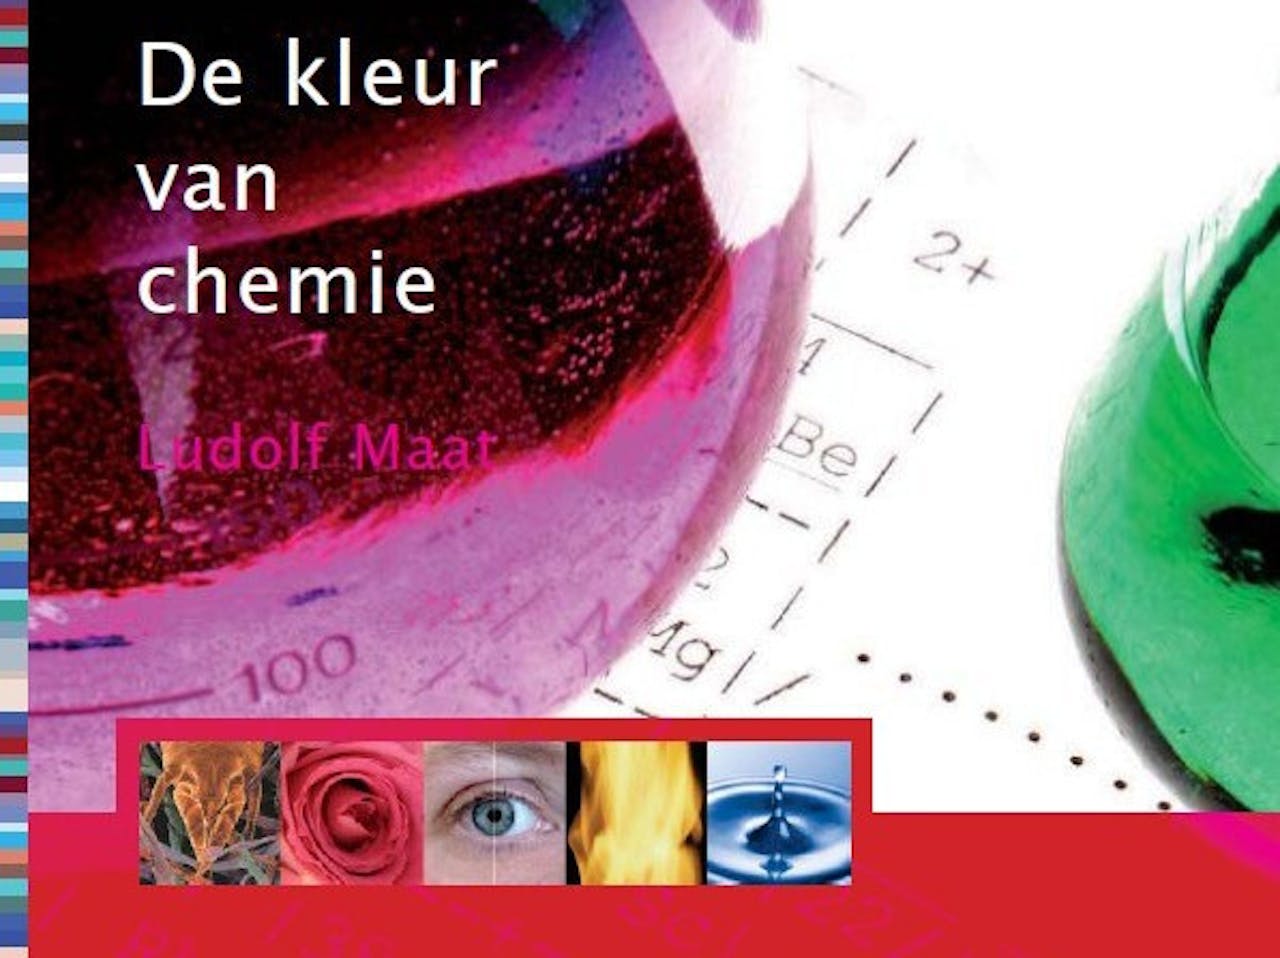 De cover van de kleur van chemie van Ludolf Maat.